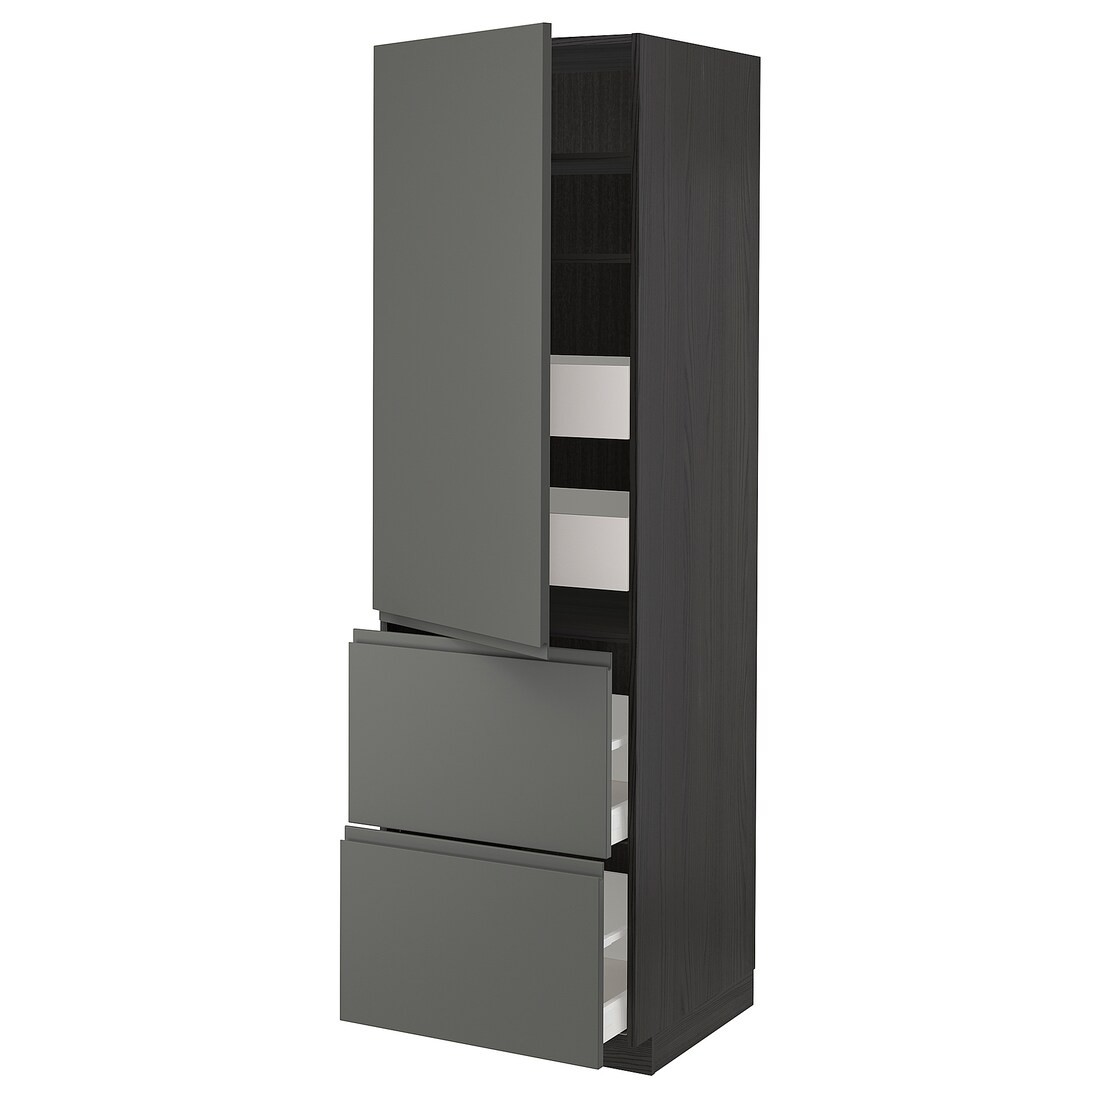 IKEA METOD МЕТОД / MAXIMERA МАКСИМЕРА Высокий шкаф с полками / ящиками, черный / Voxtorp темно-серый, 60x60x200 см 89353951 | 893.539.51